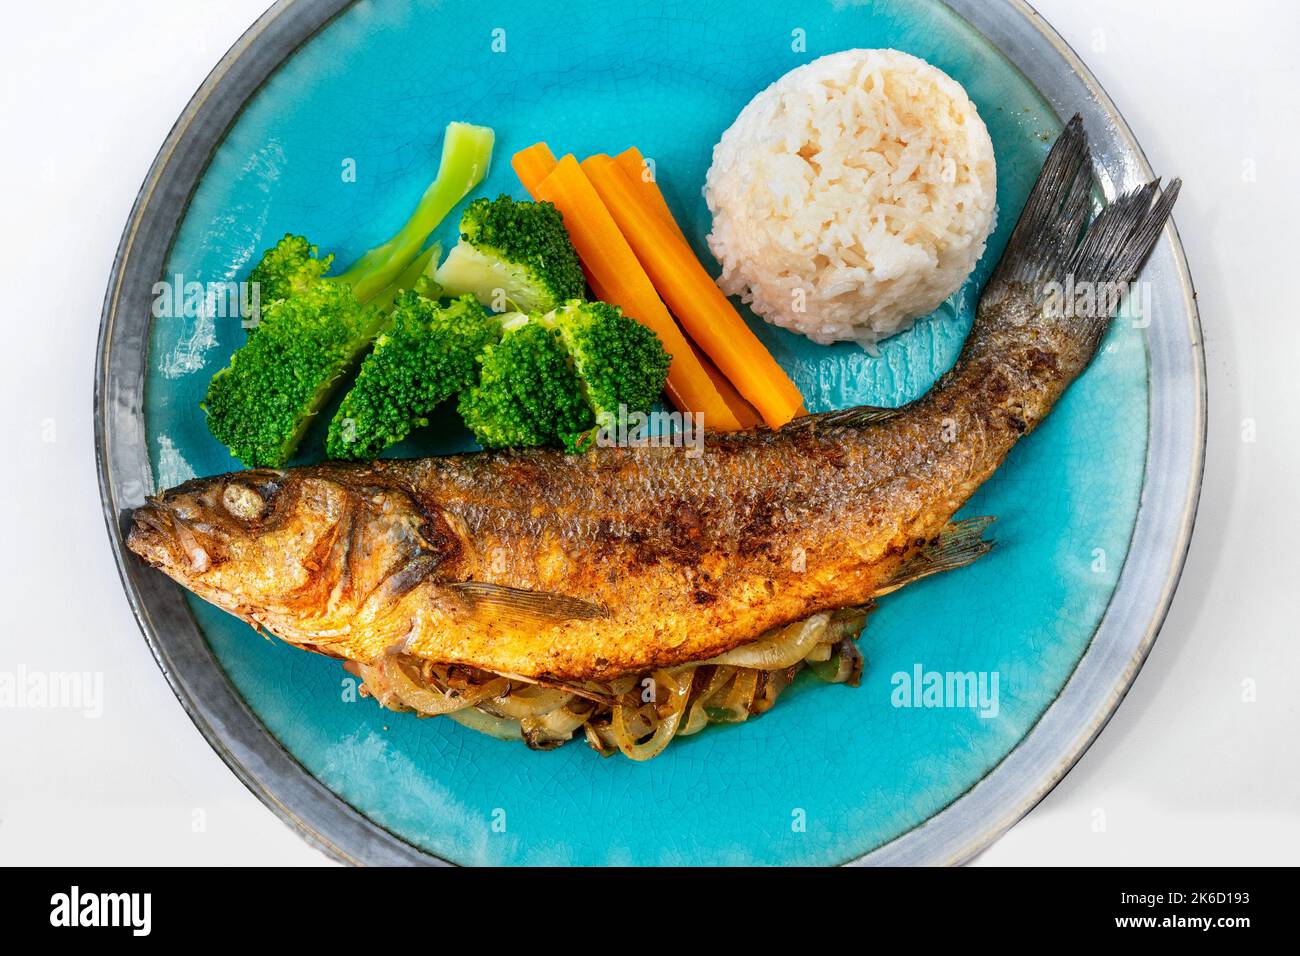 Gebratene Forelle gefüllt mit Zwiebeln, Gemüsegarnitur (Brokkoli und Karotte) und Reis auf blauem Teller, Nahaufnahme. Stockfoto